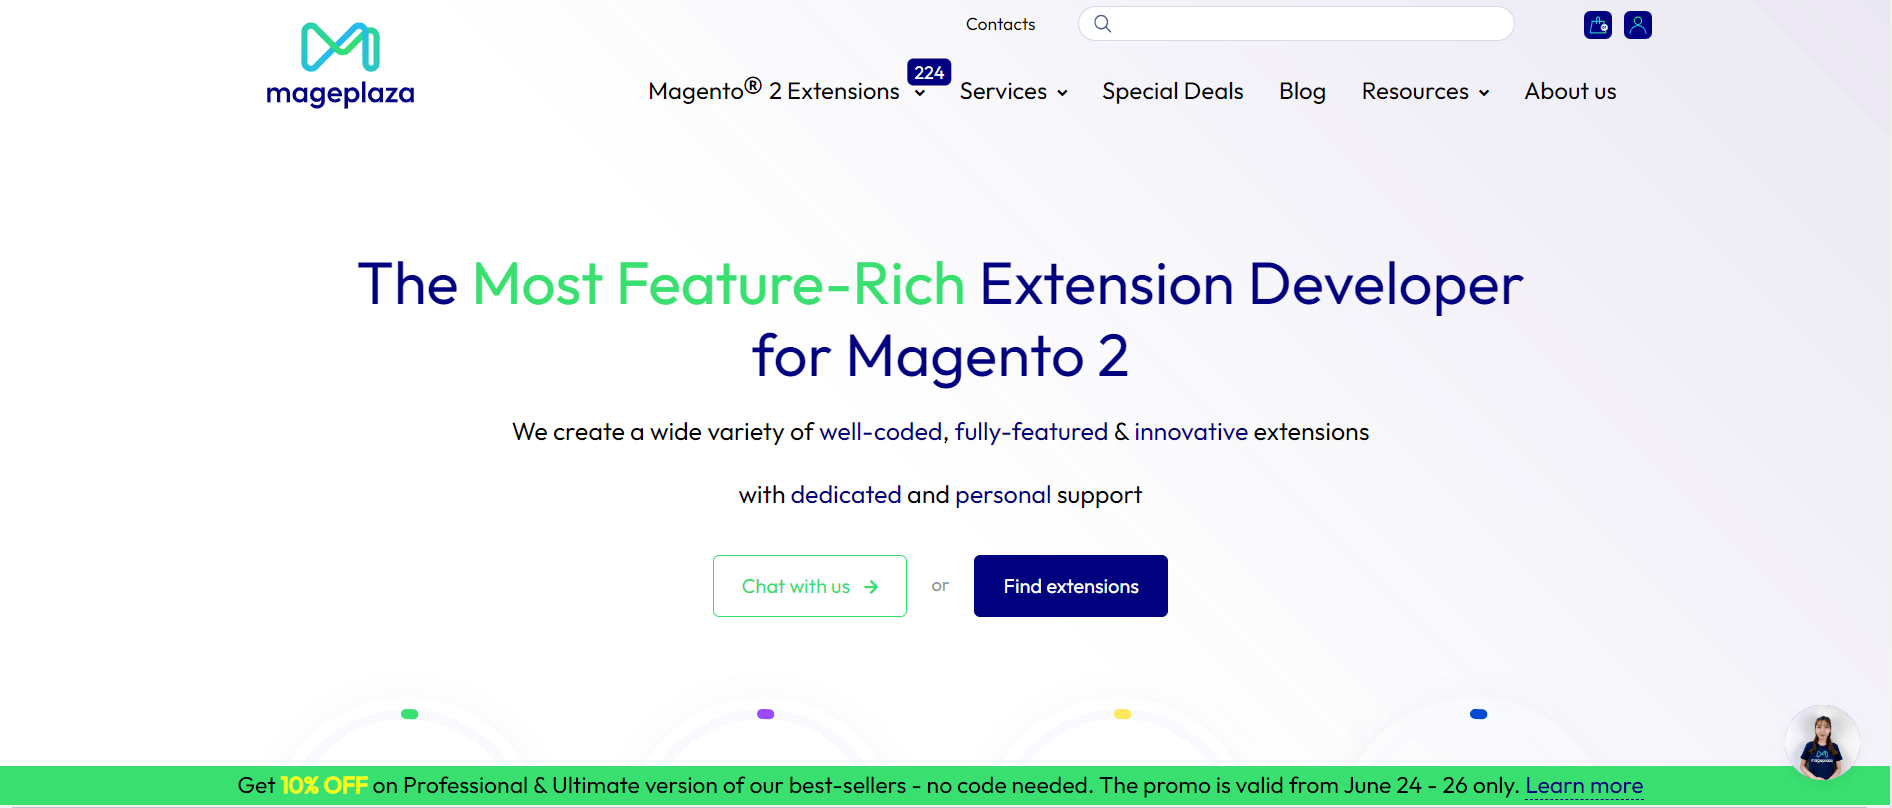 Mageplaza’s website